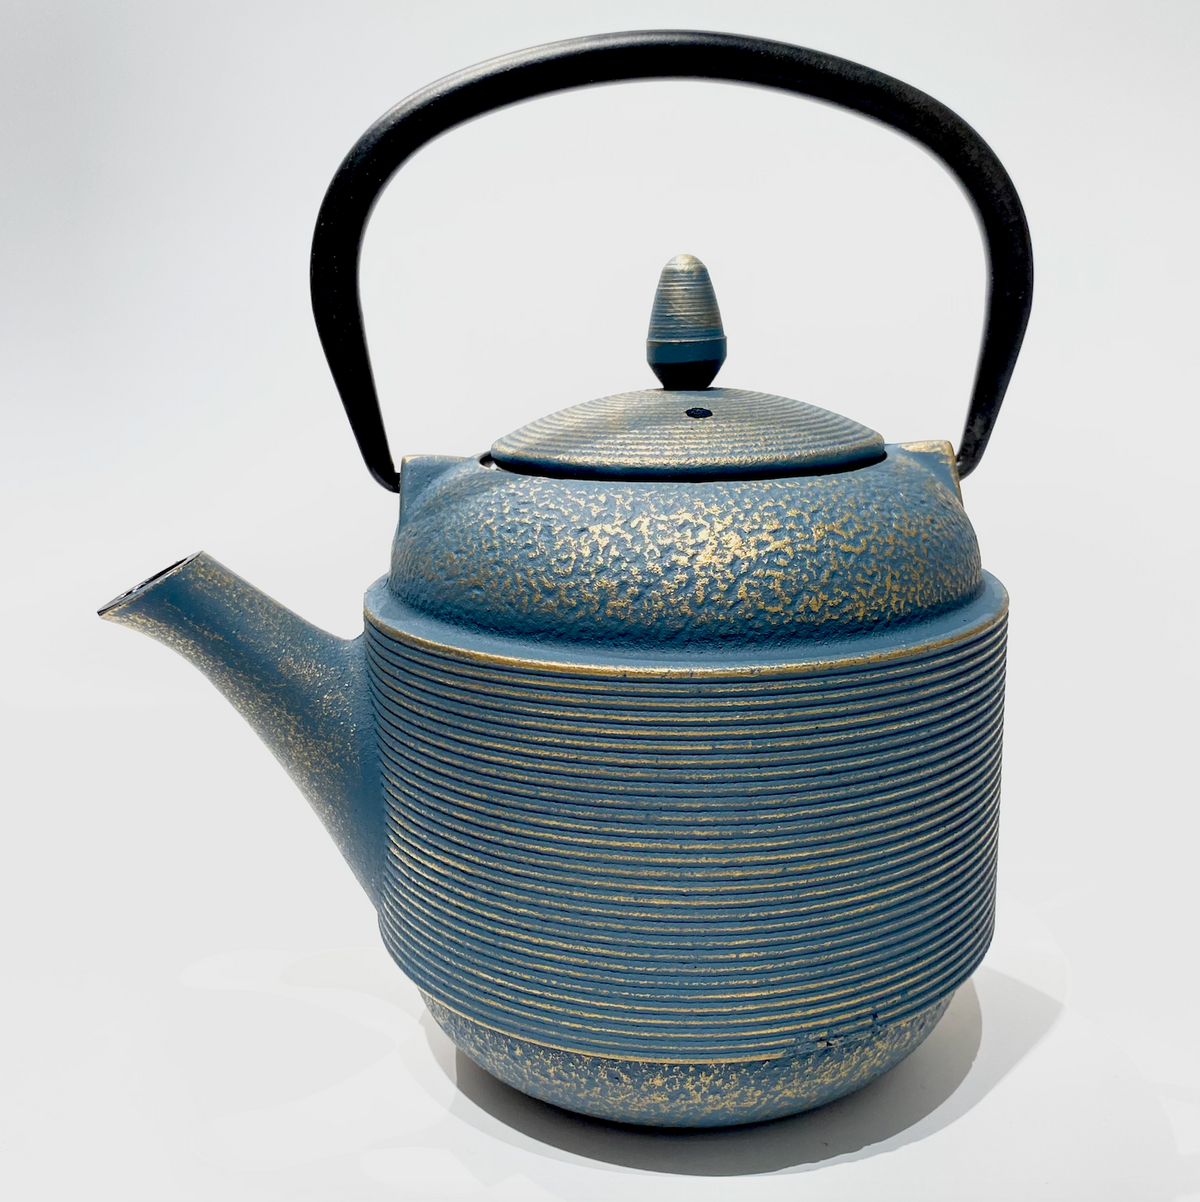 Cast Iron Teapot-Light Blue